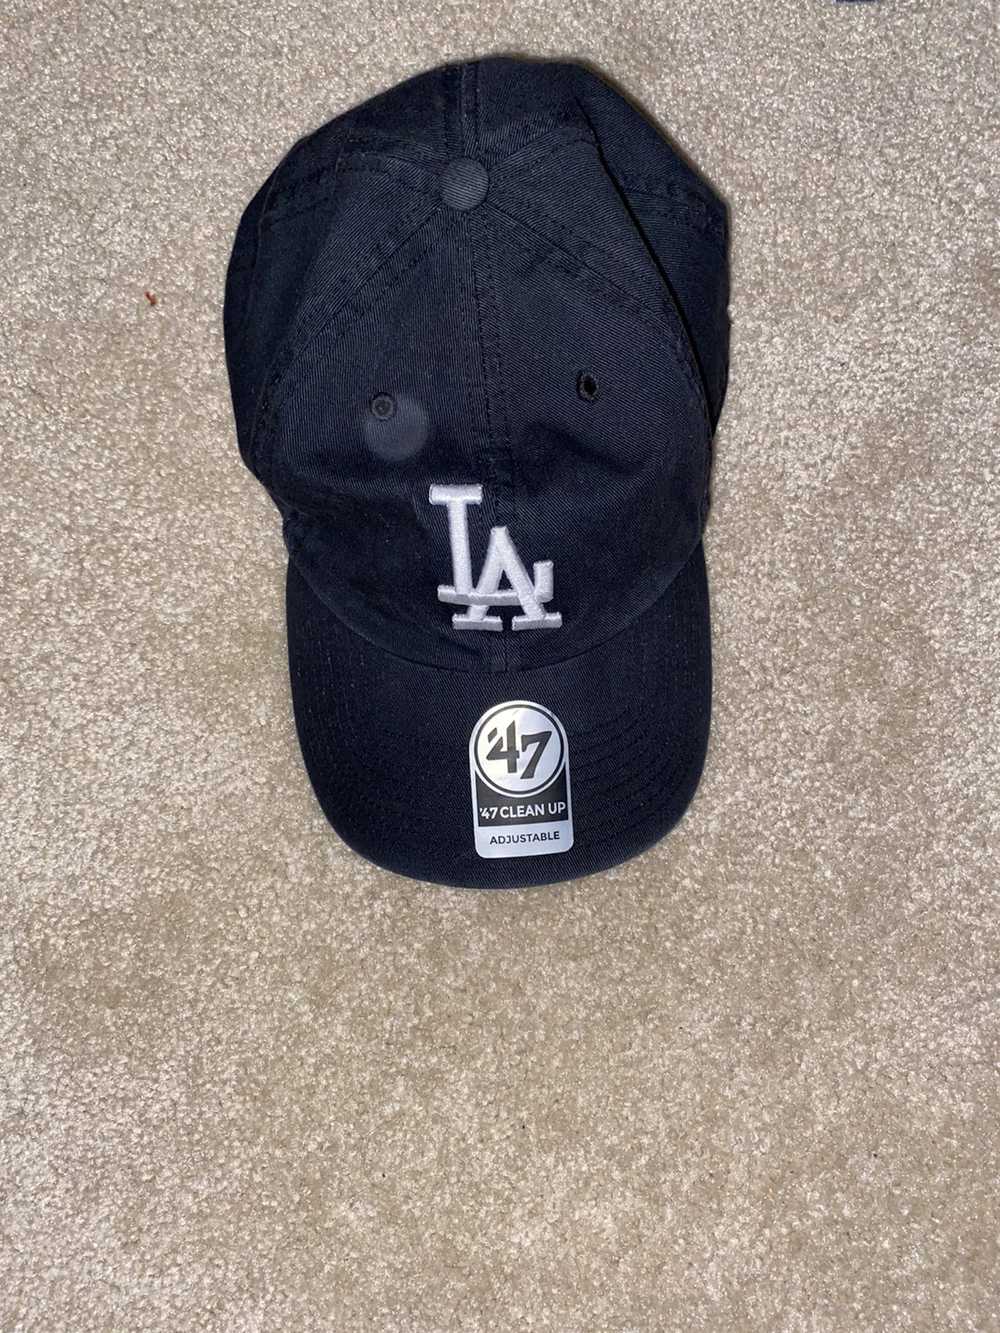 Lids L.A Baseball cap/ Hat - image 1